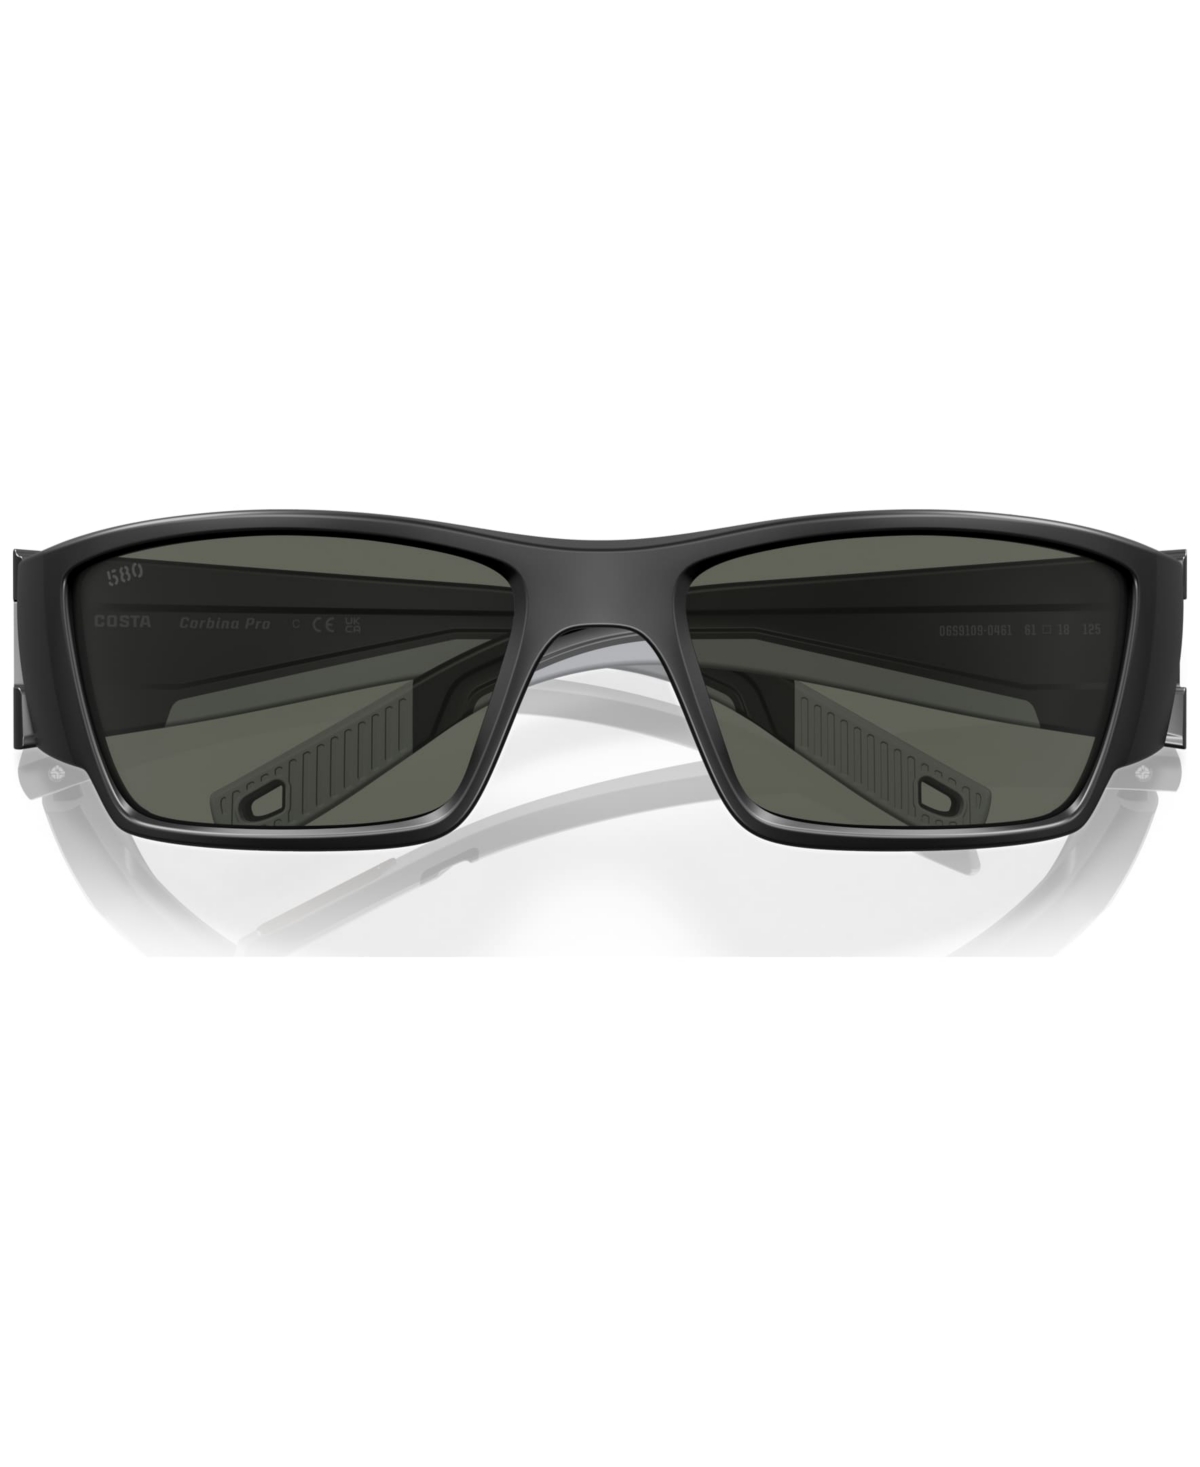 Shop Costa Del Mar Men's Polarized Sunglasses, Corbina Pro In Matte Black